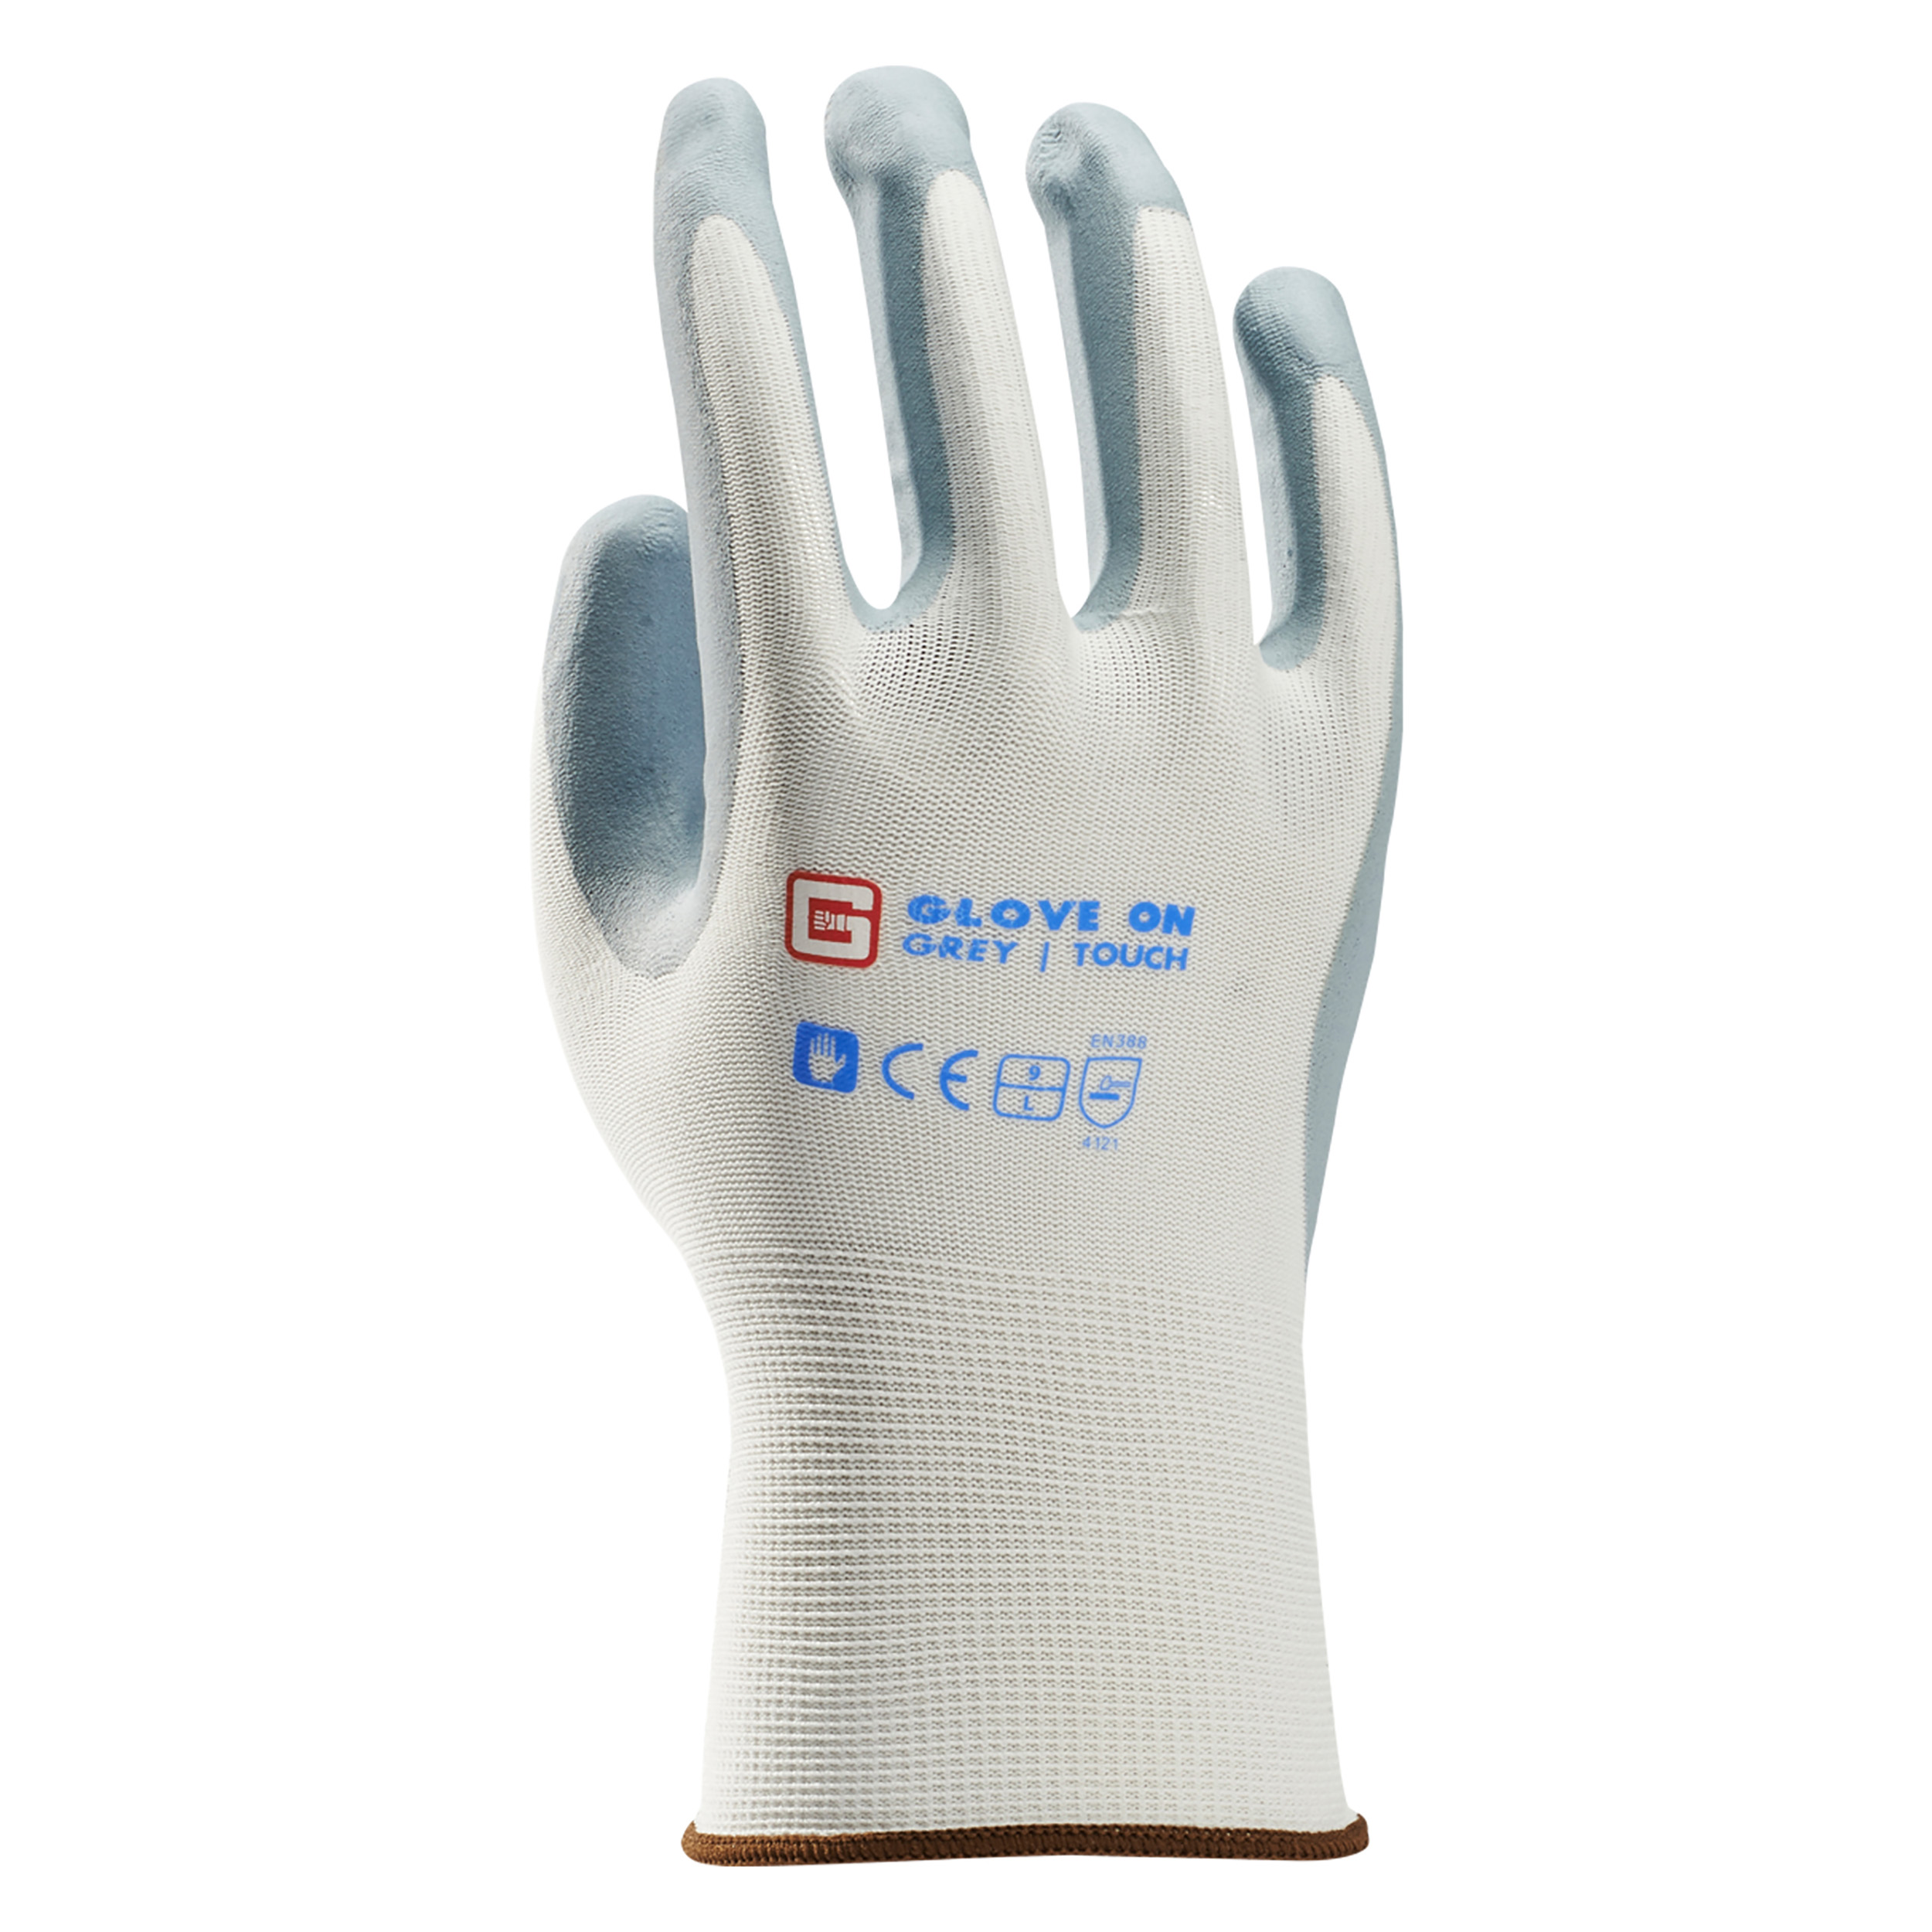 21.080.30 Glove On Touch werkhandschoen touch grey - XL